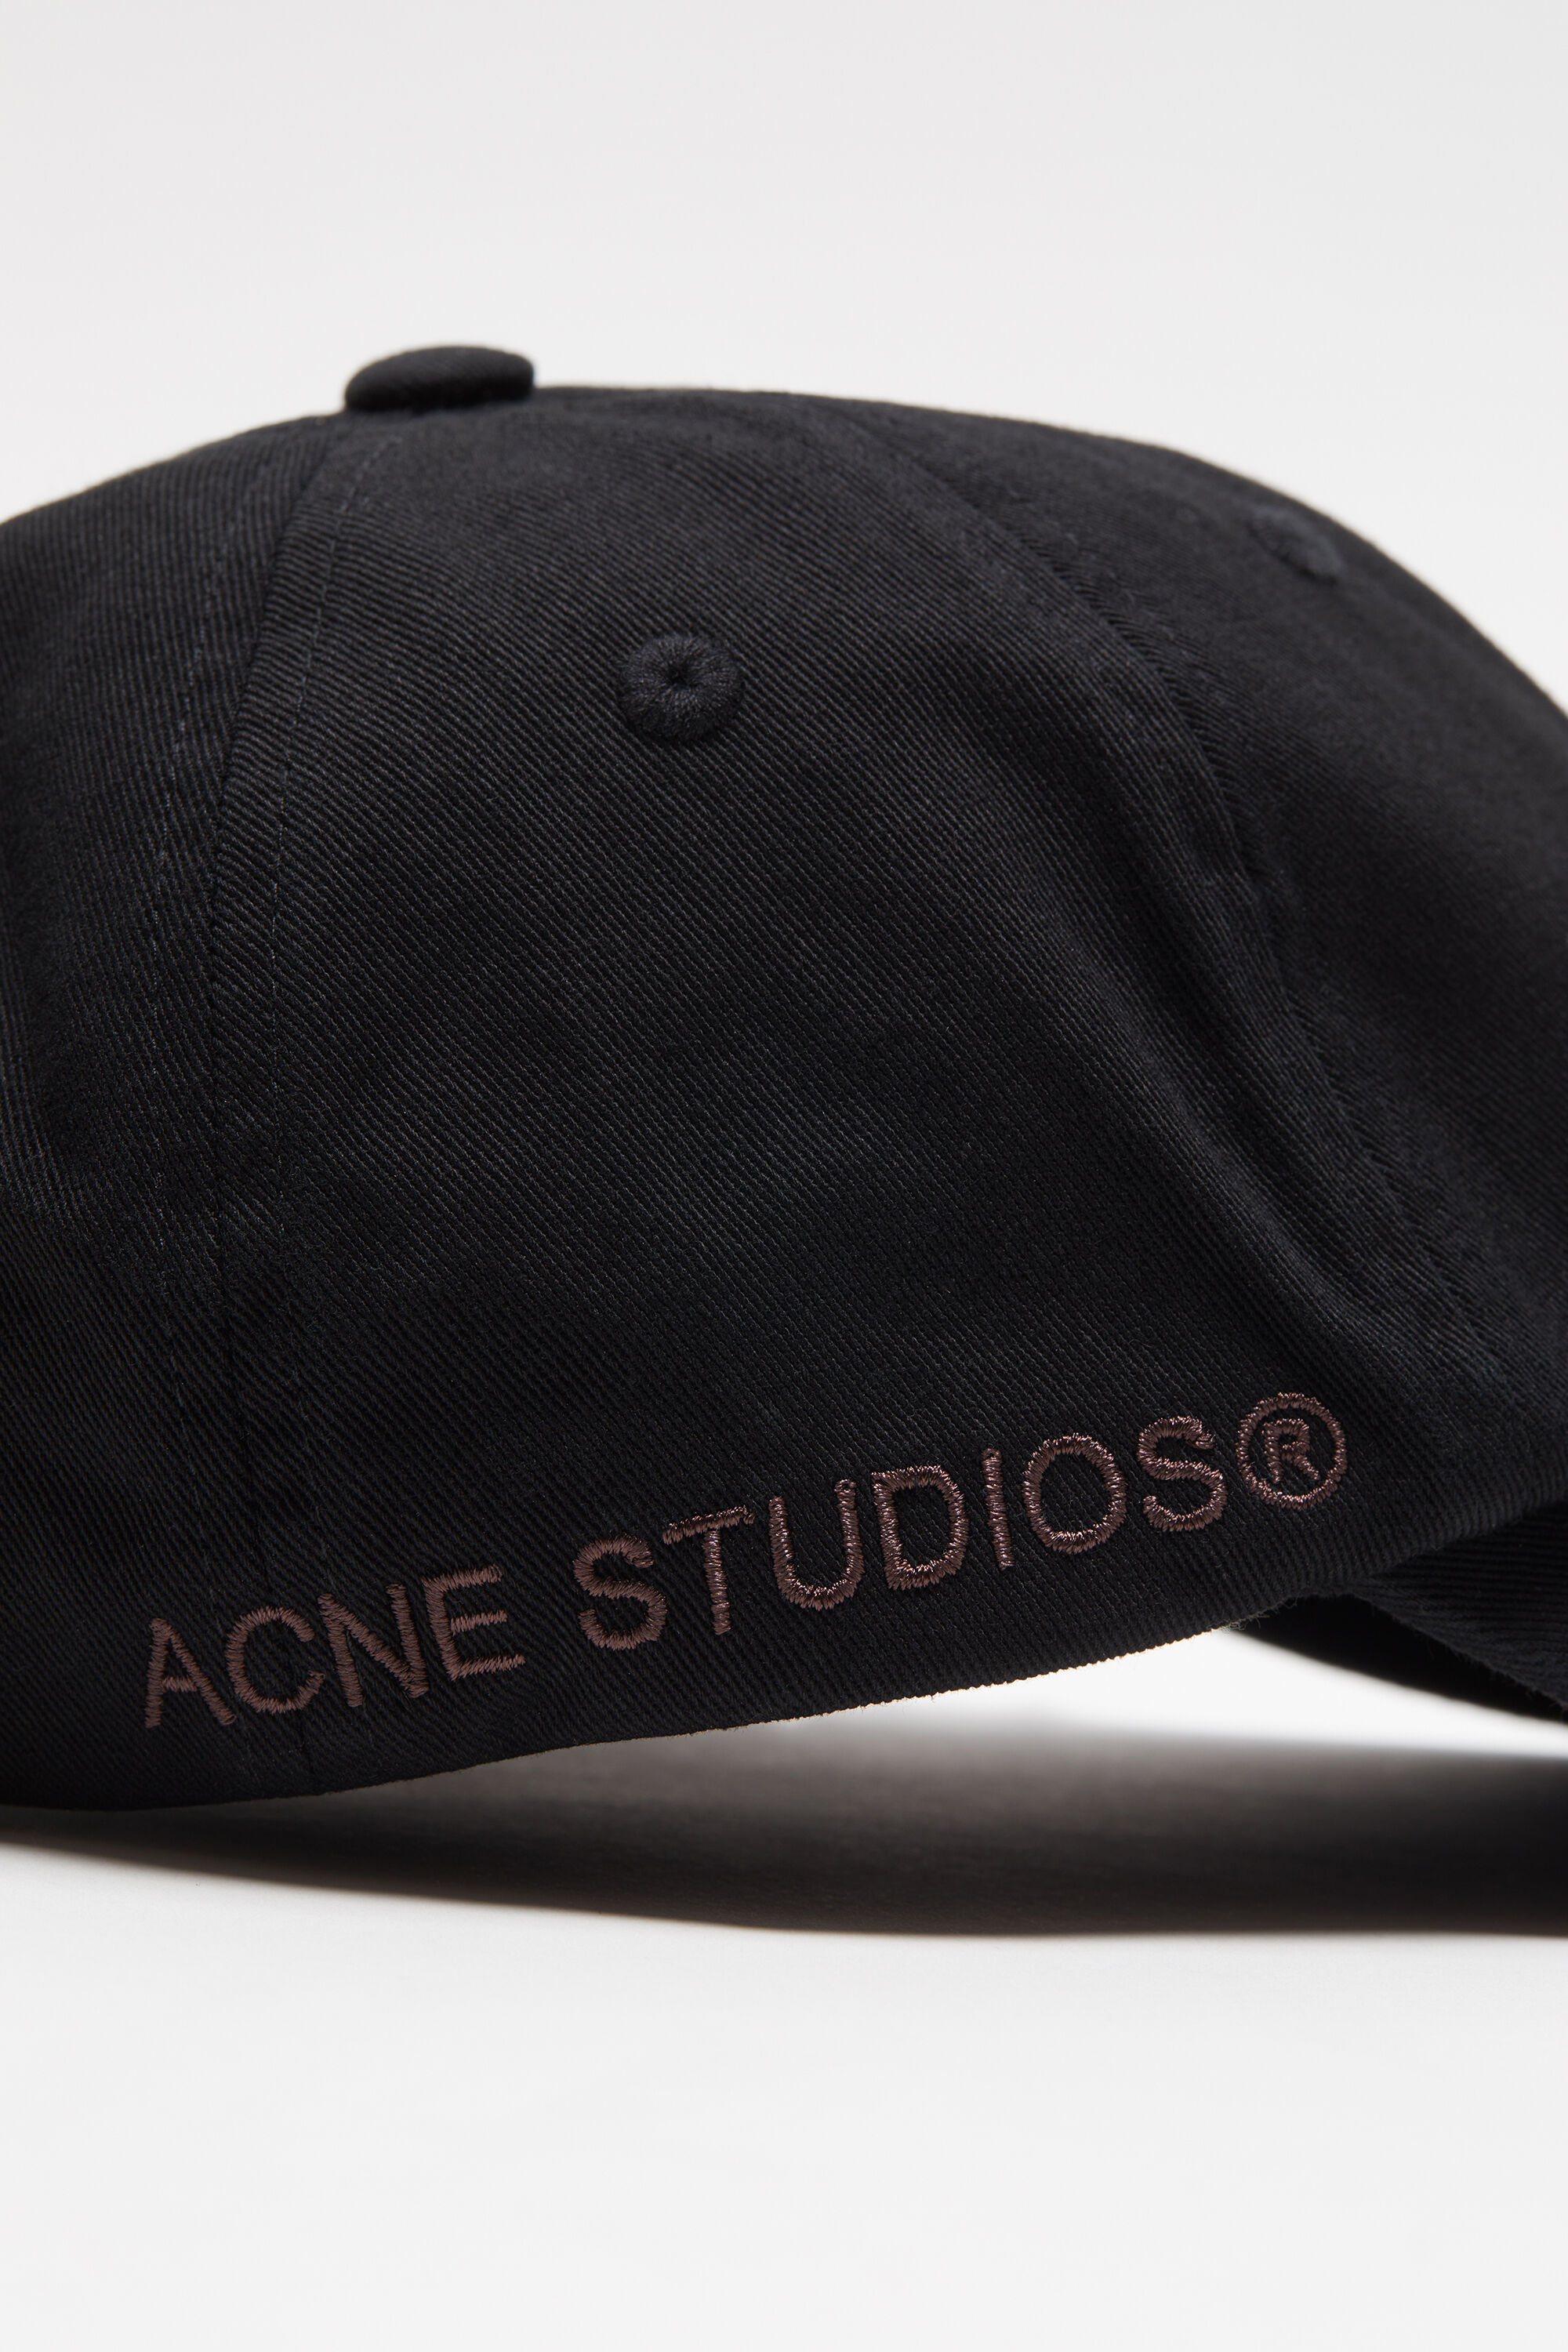 最新品お得M様専用 acne studious ベースボールキャップ 帽子